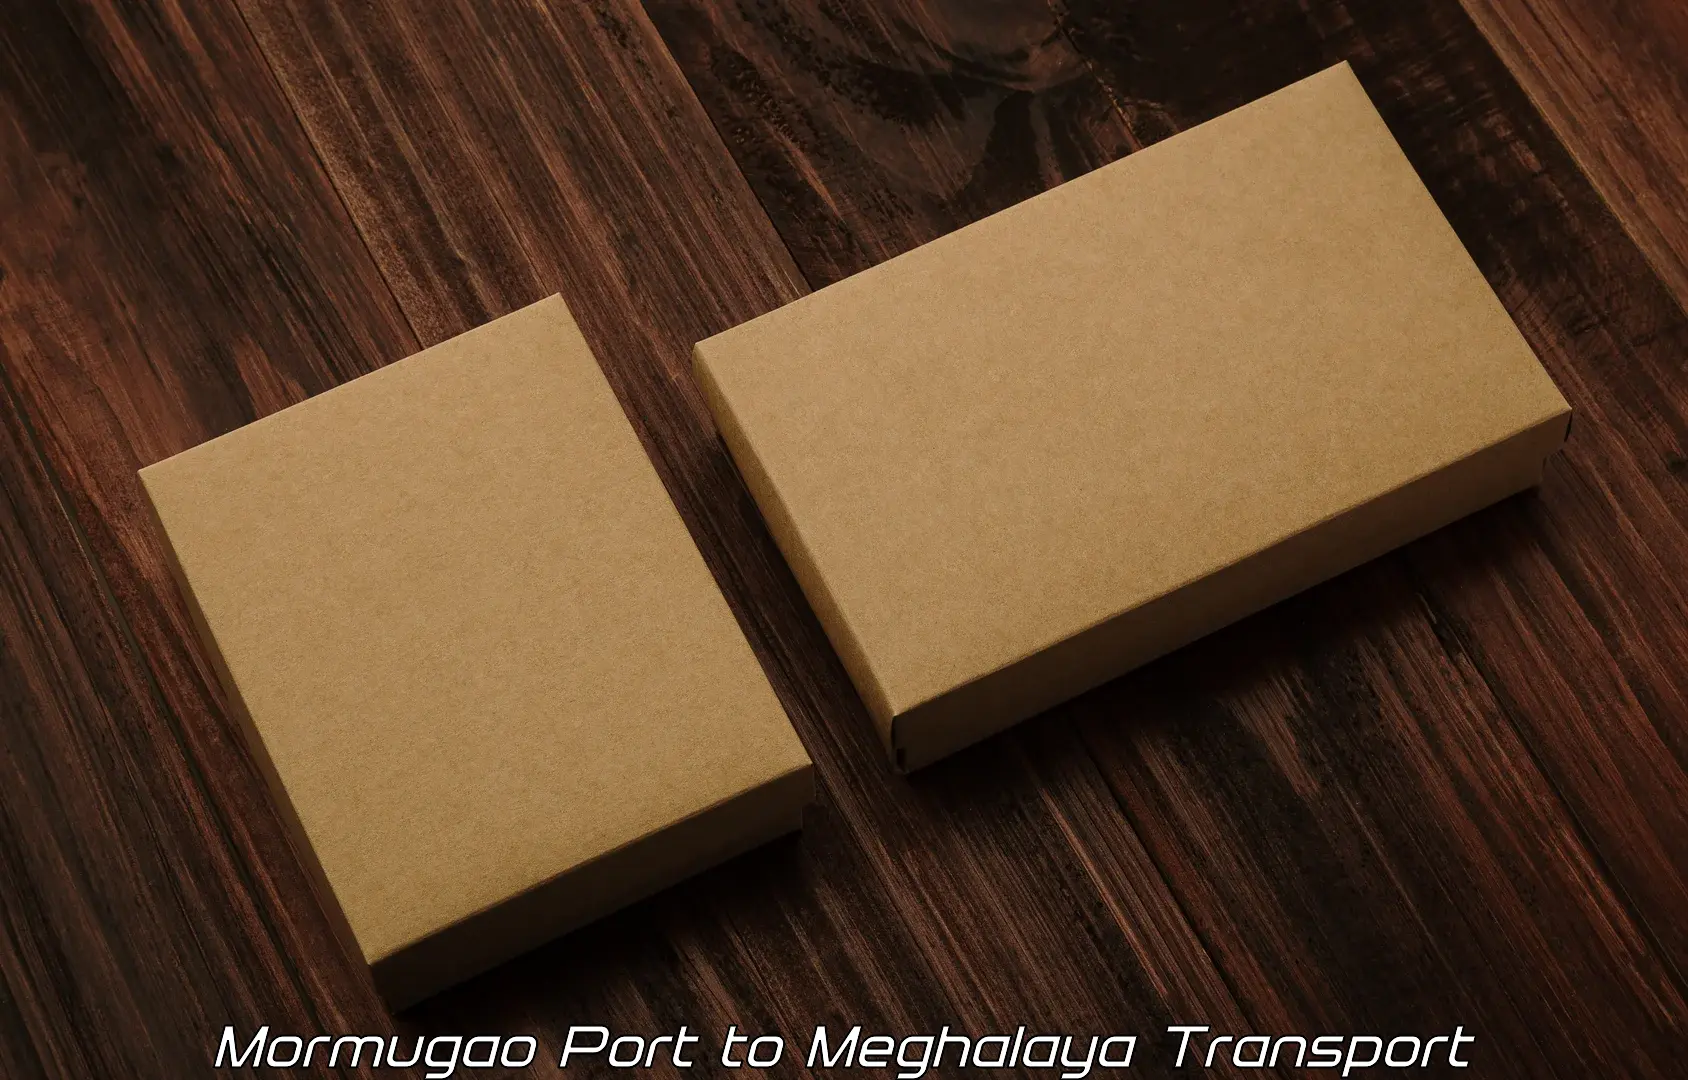 Daily parcel service transport Mormugao Port to Williamnagar